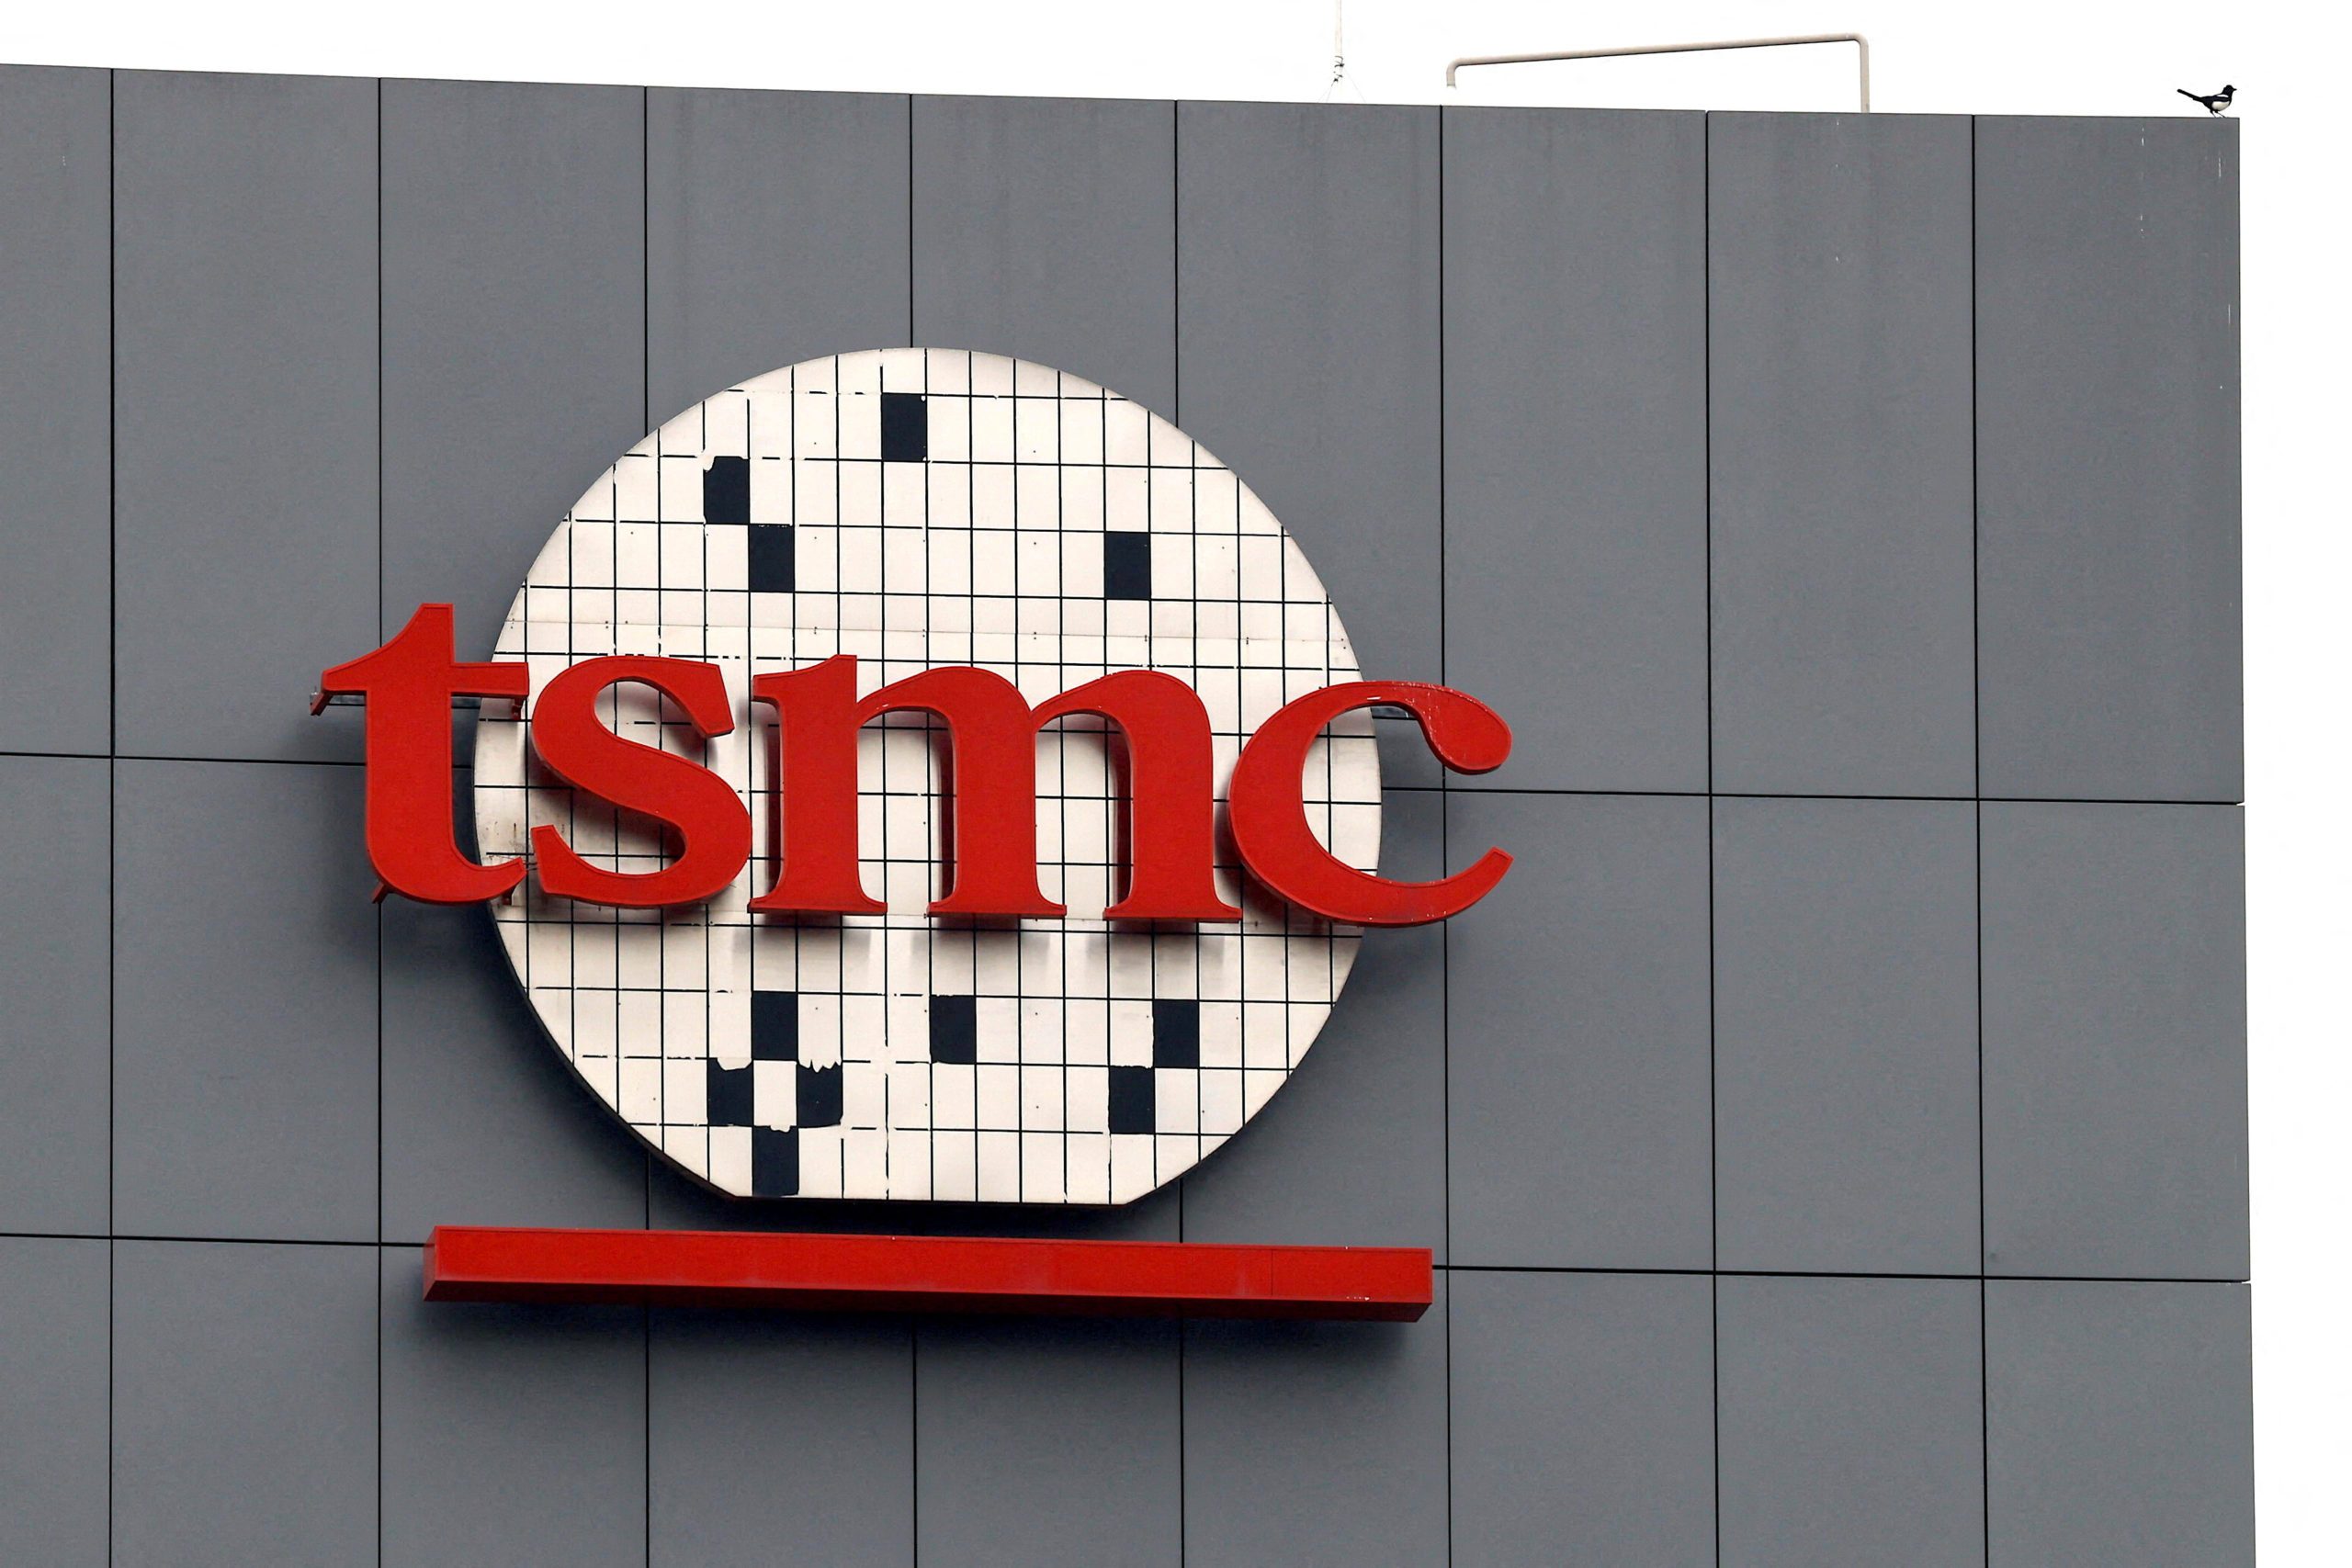 TSMC tells vendors to delay chip equipment deliveries amid demand concerns